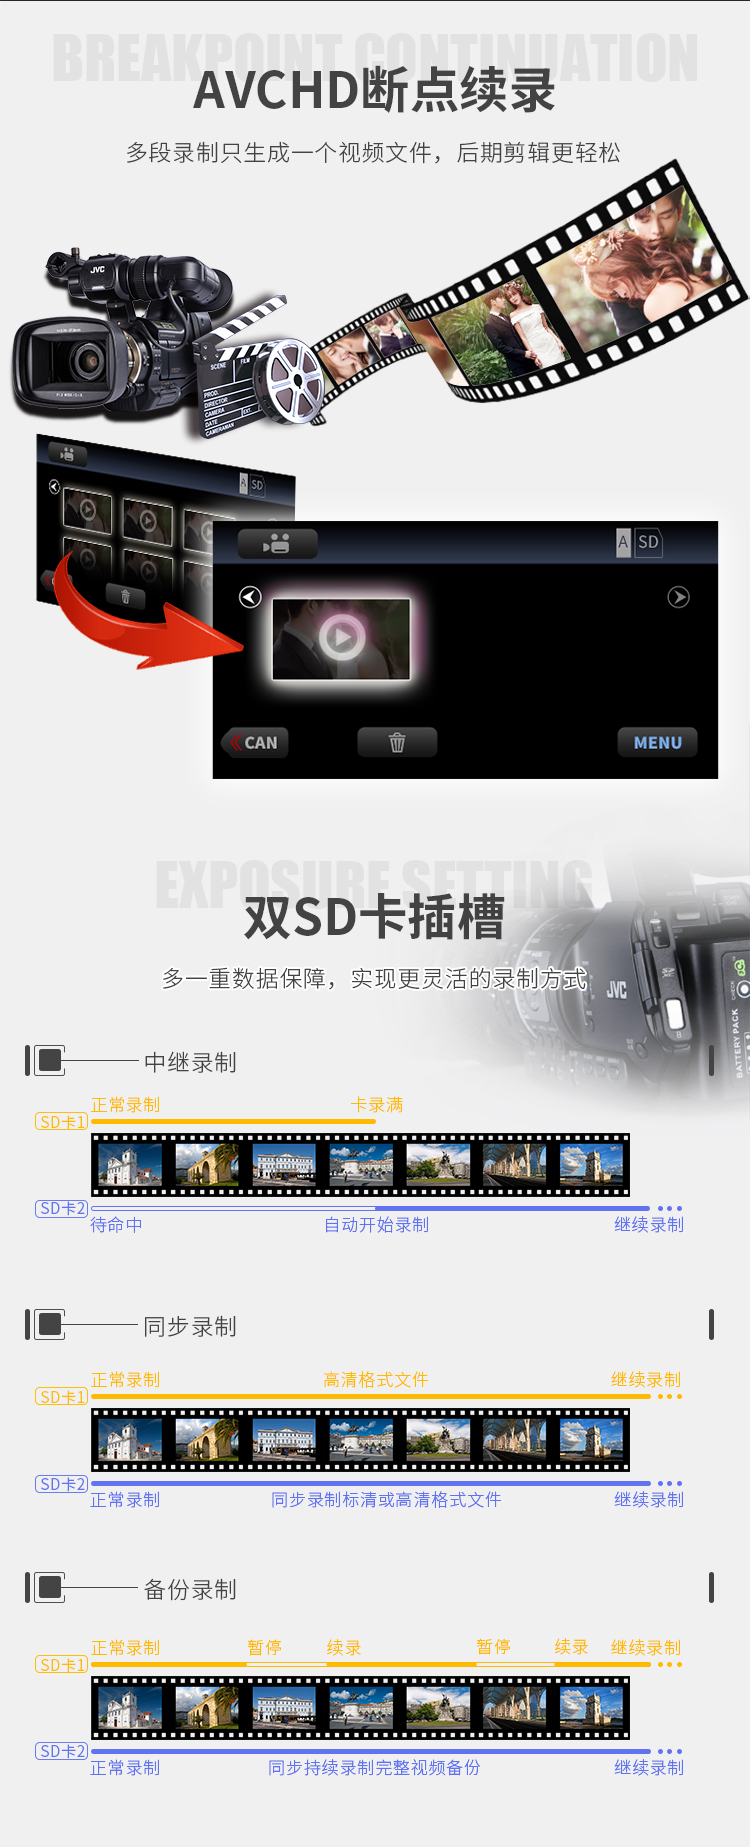 杰伟世(JVC )JY-HM360摄像机 标配套餐黑色